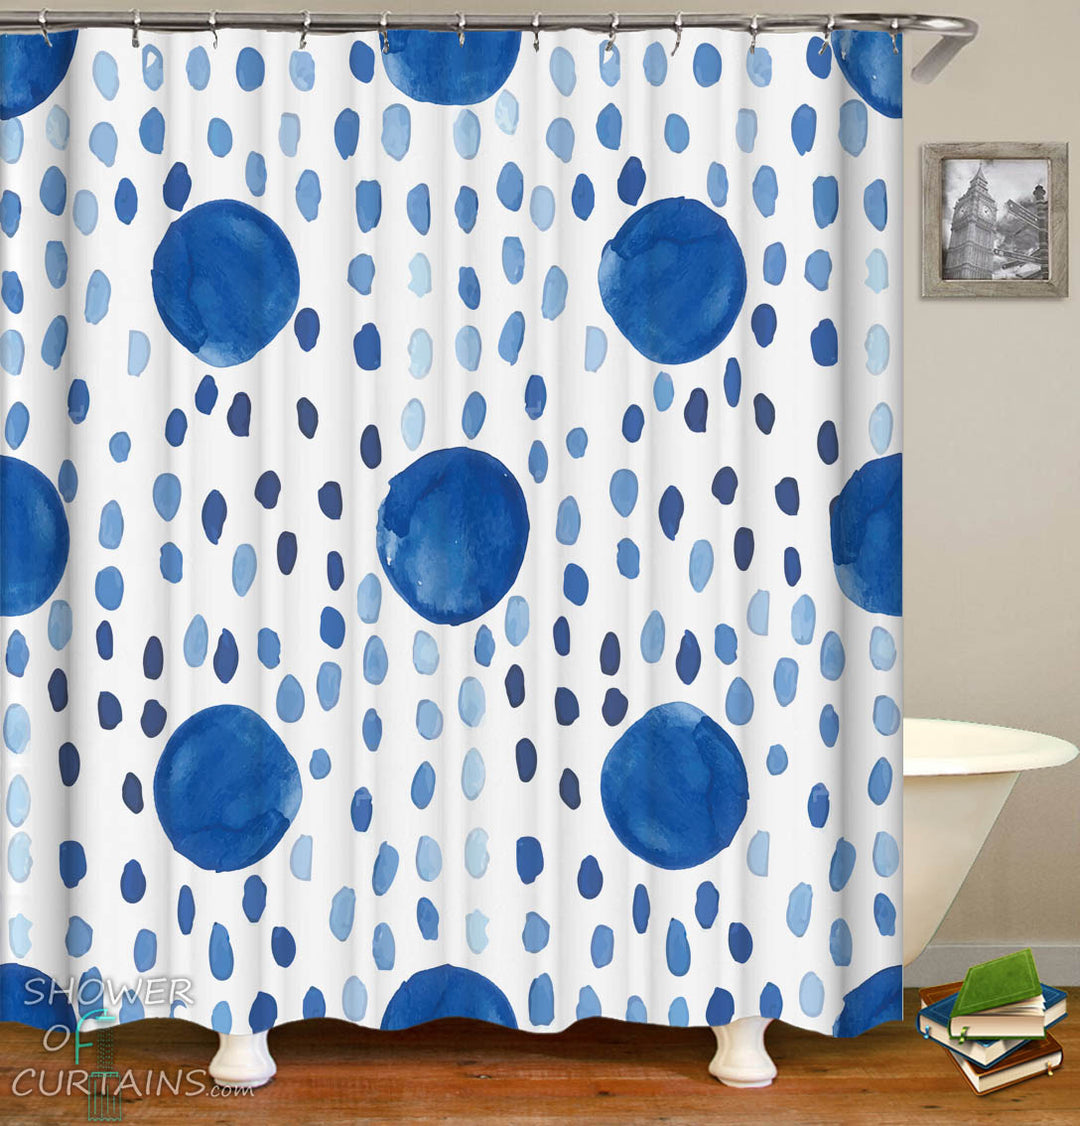 Blue Drops Shower Curtain - Blue Themed Bathroom Decor